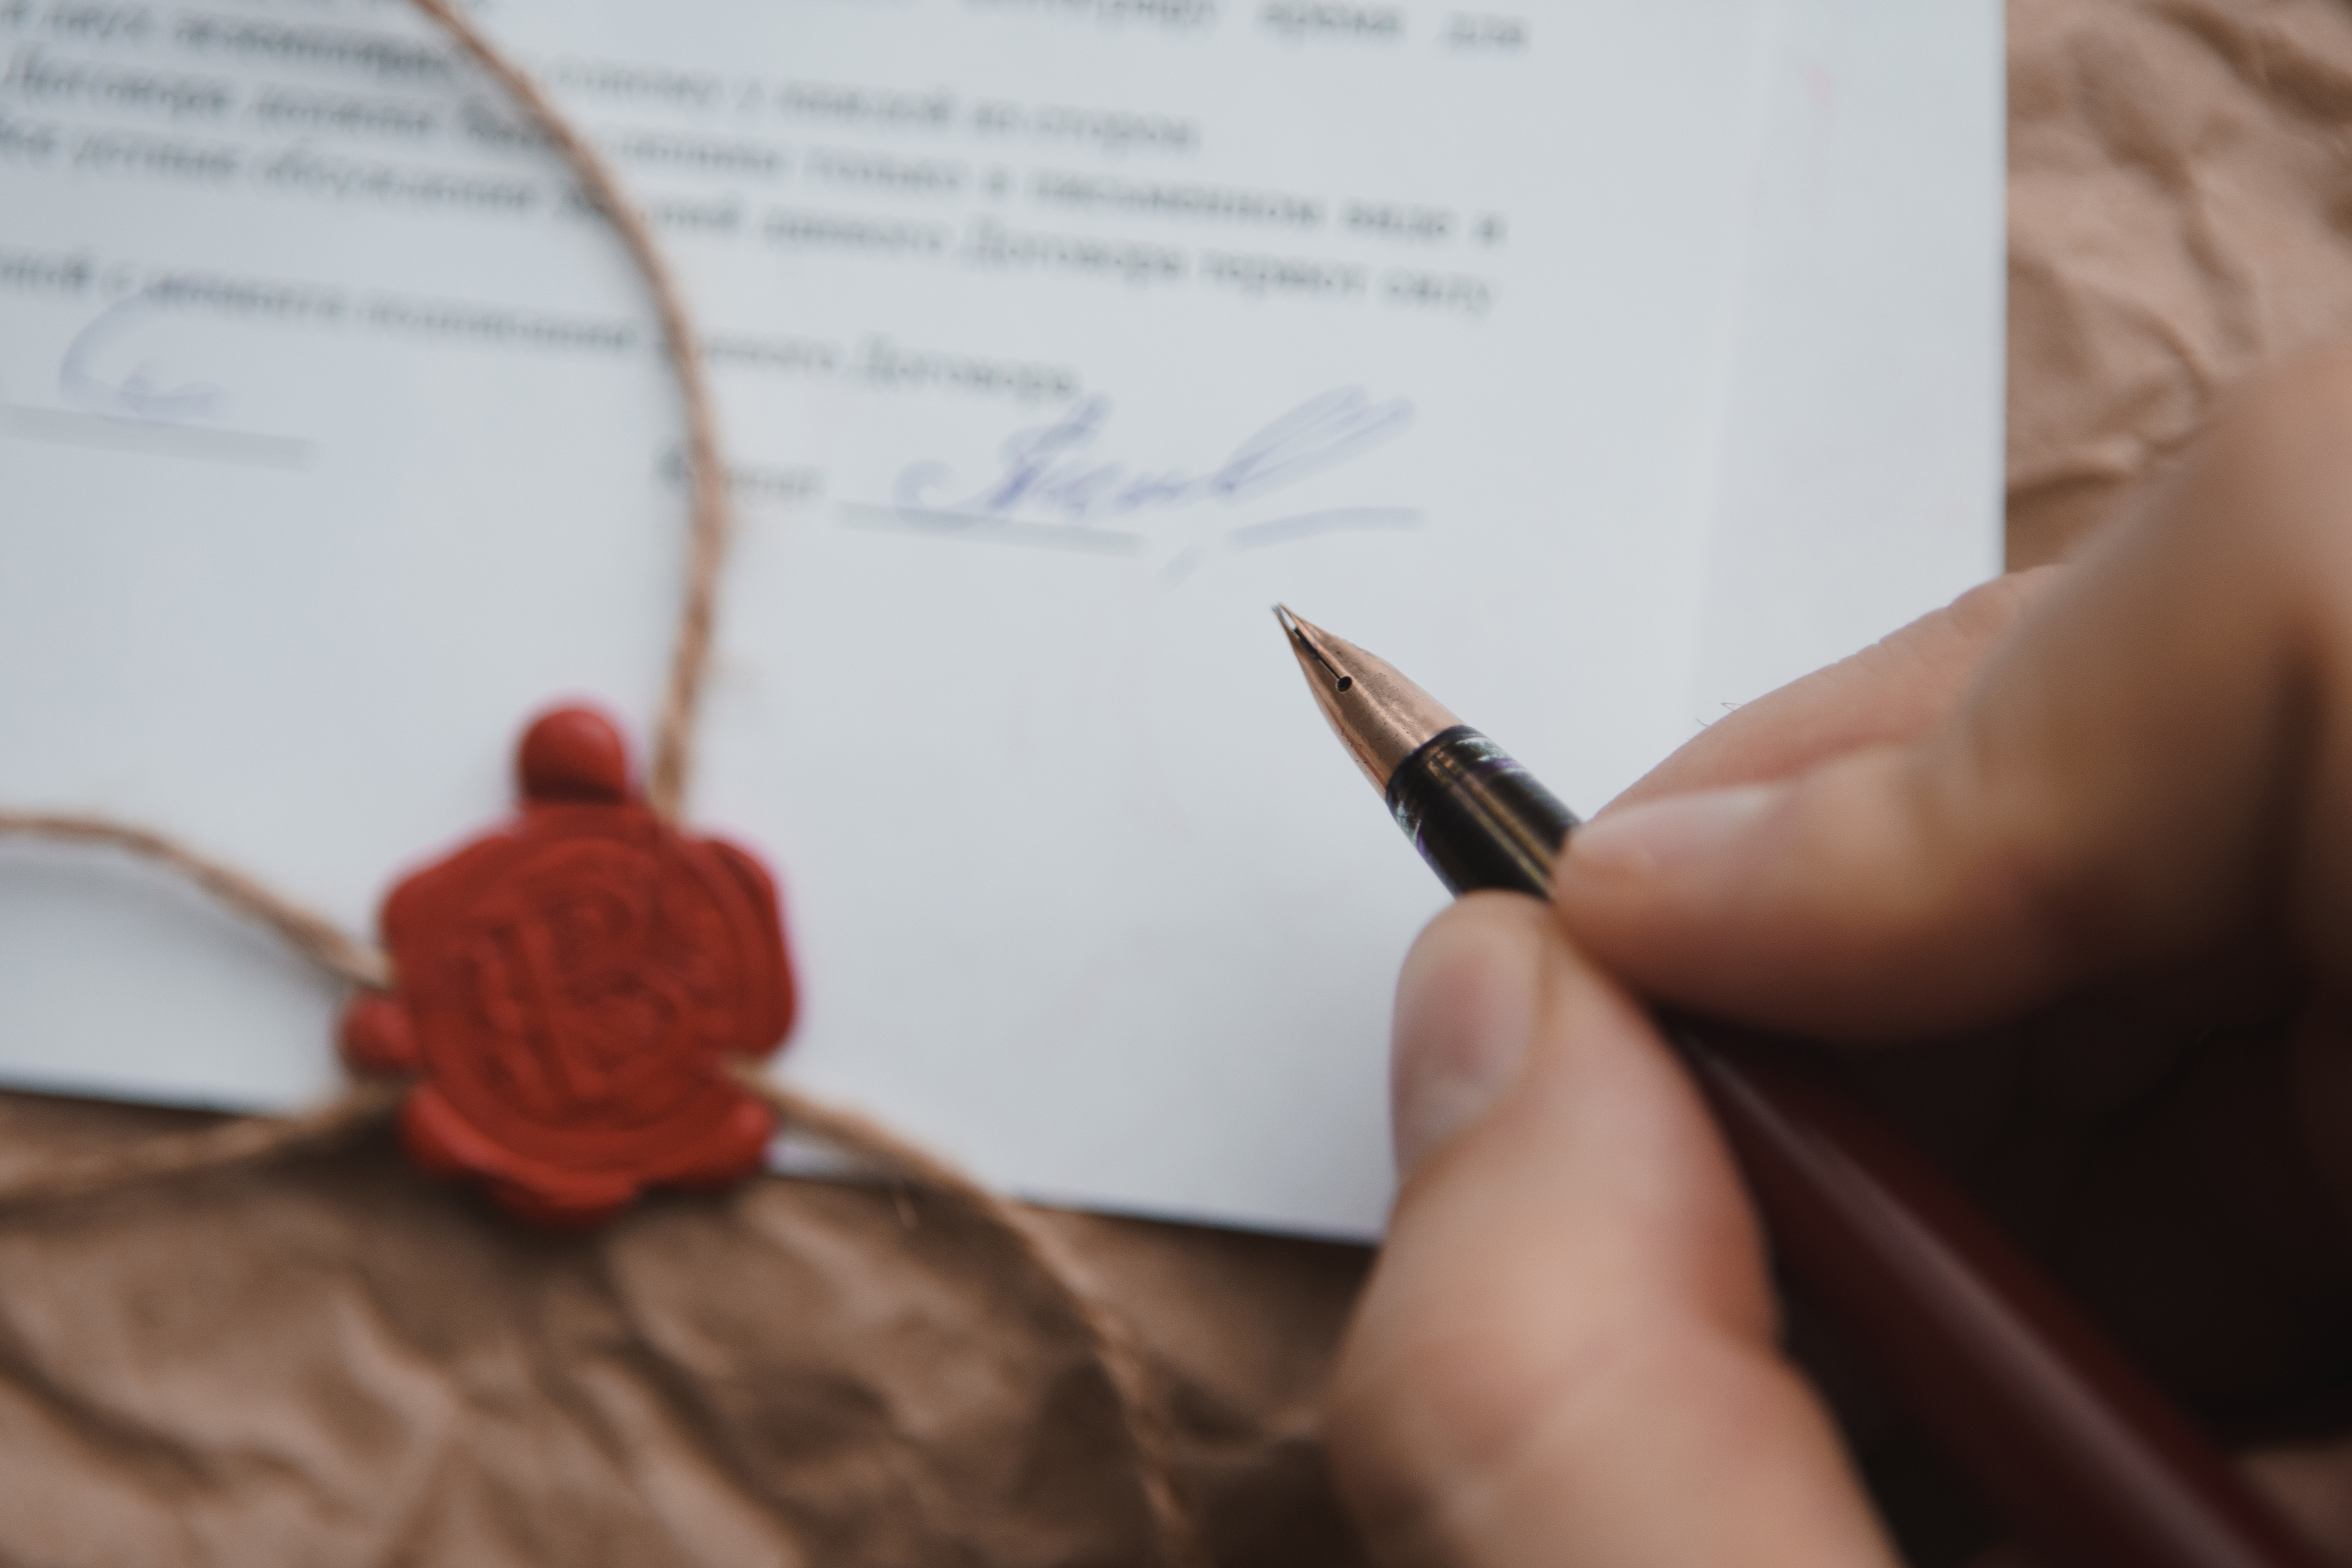 Una persona firmando un documento | Fuente: Shutterstock